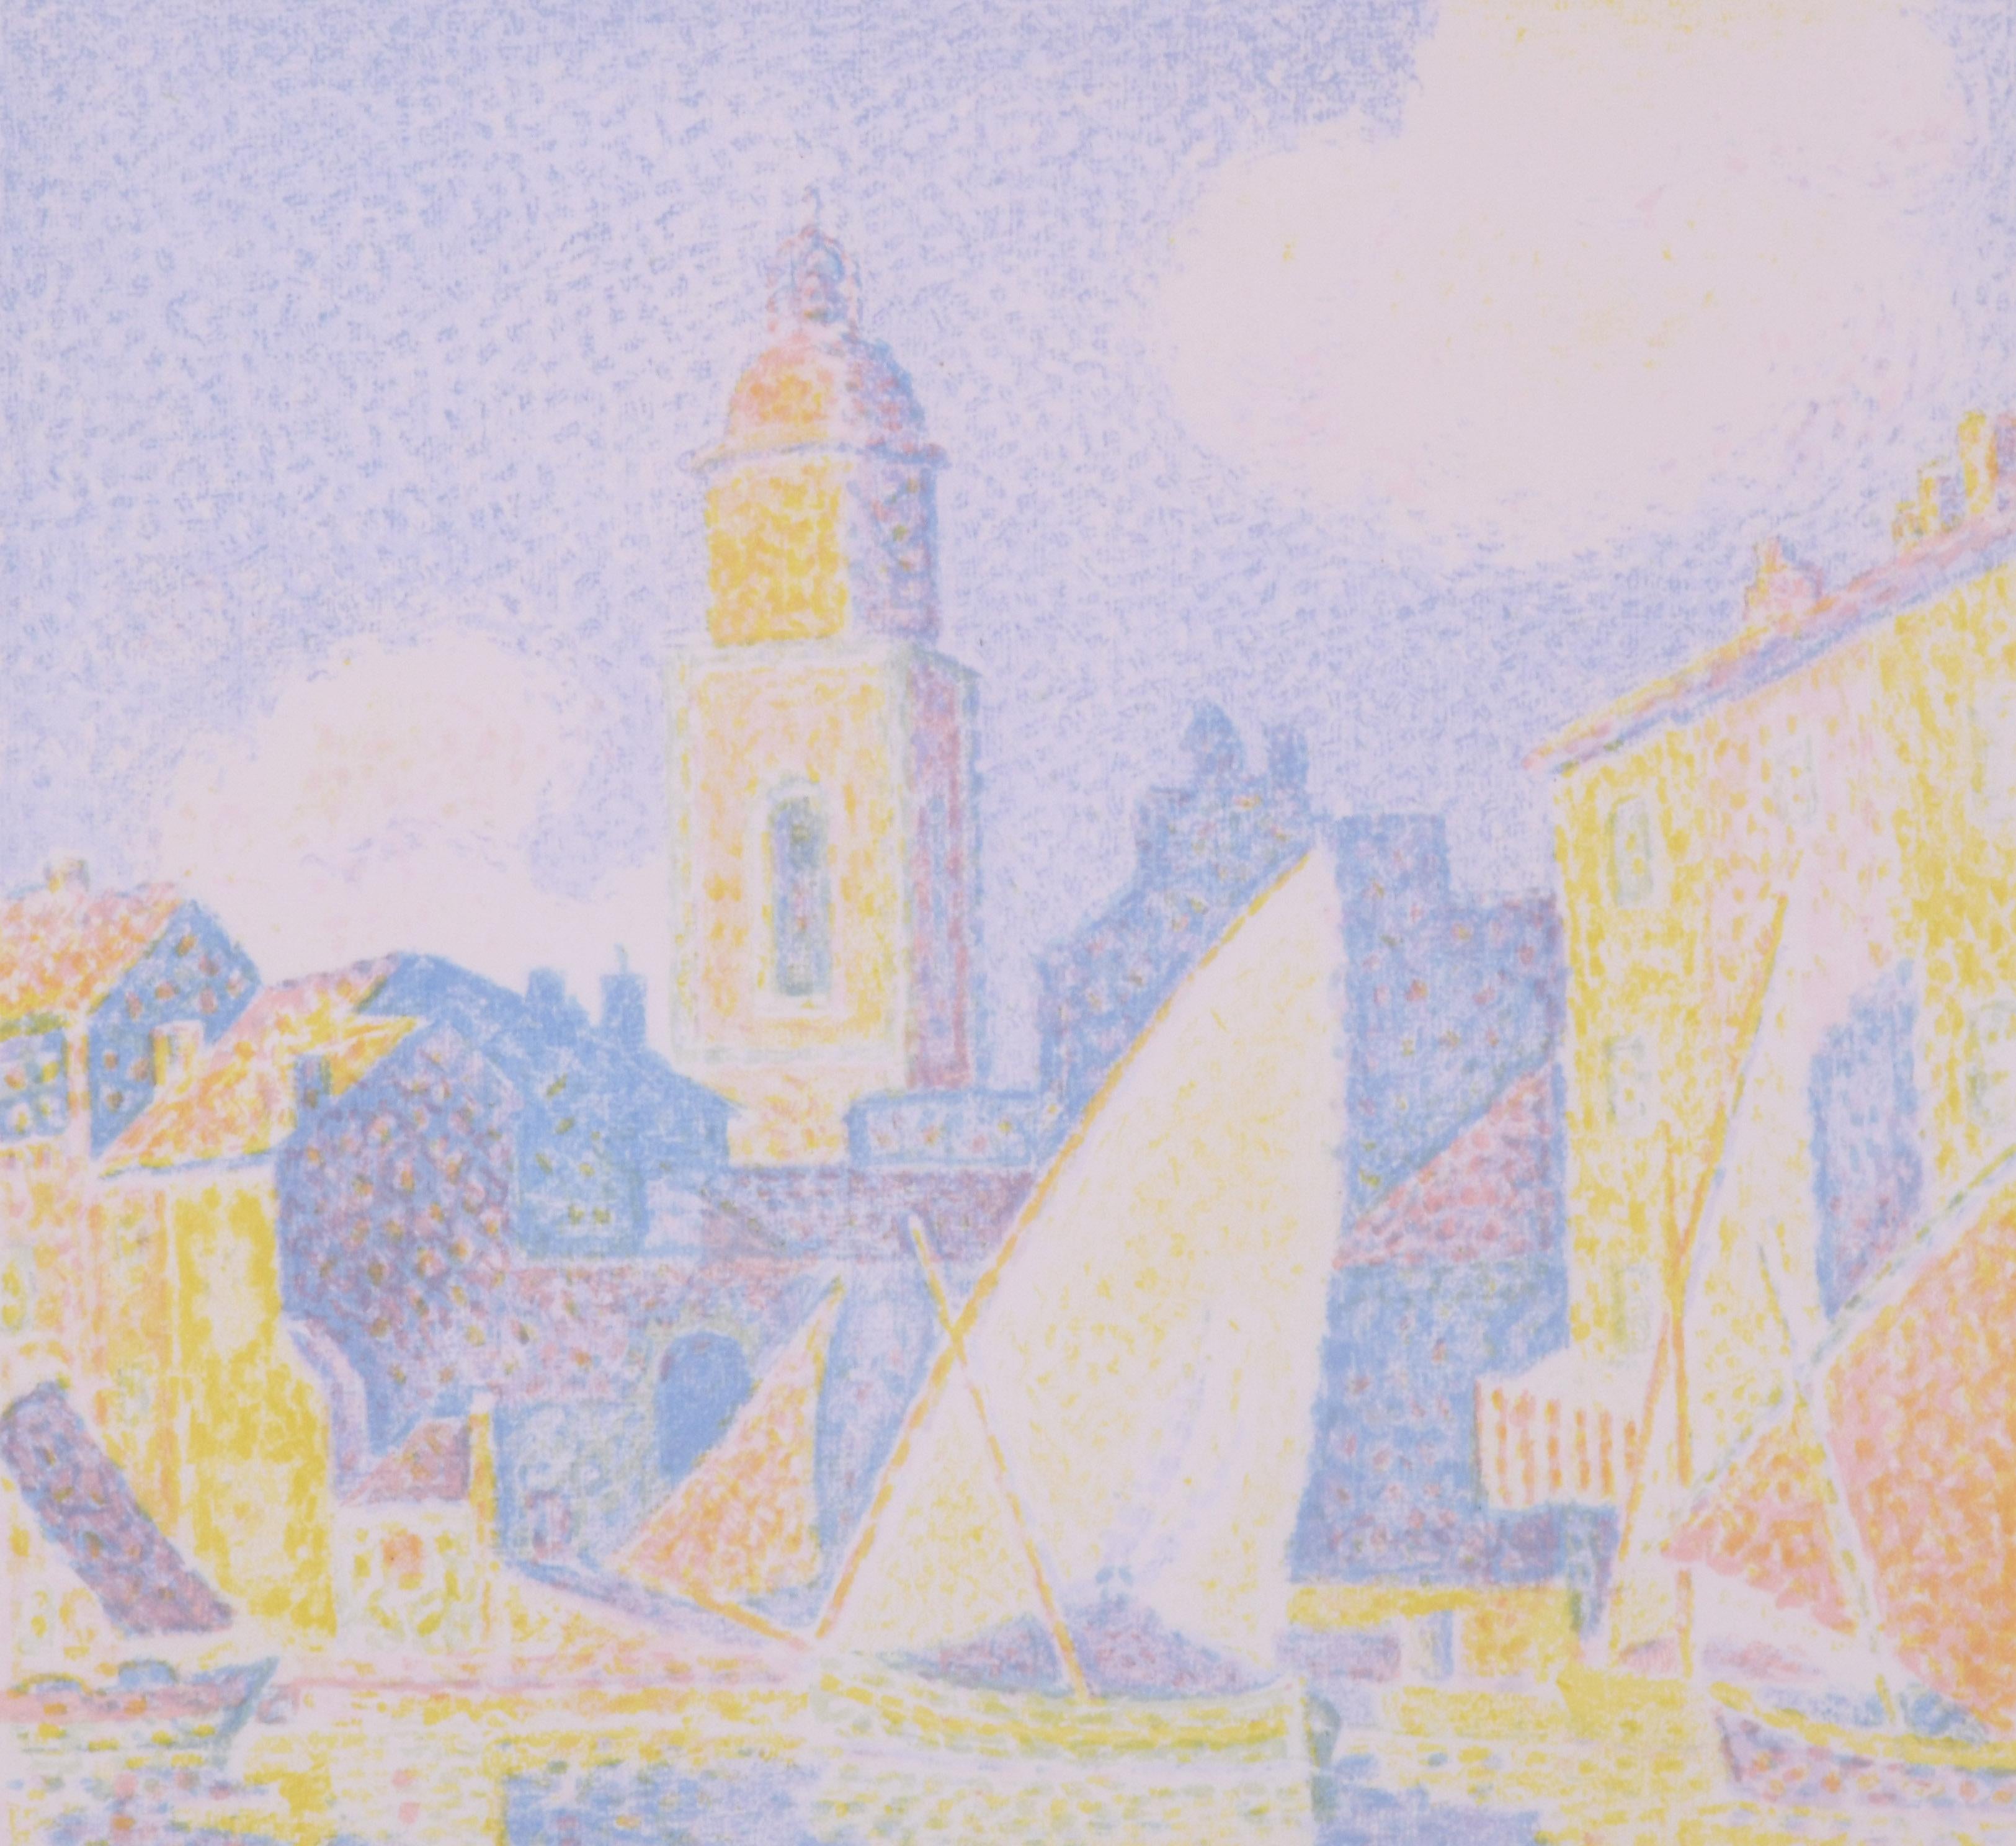 Saint-Tropez-Le Port - Post-Impressionist Print by Paul Signac